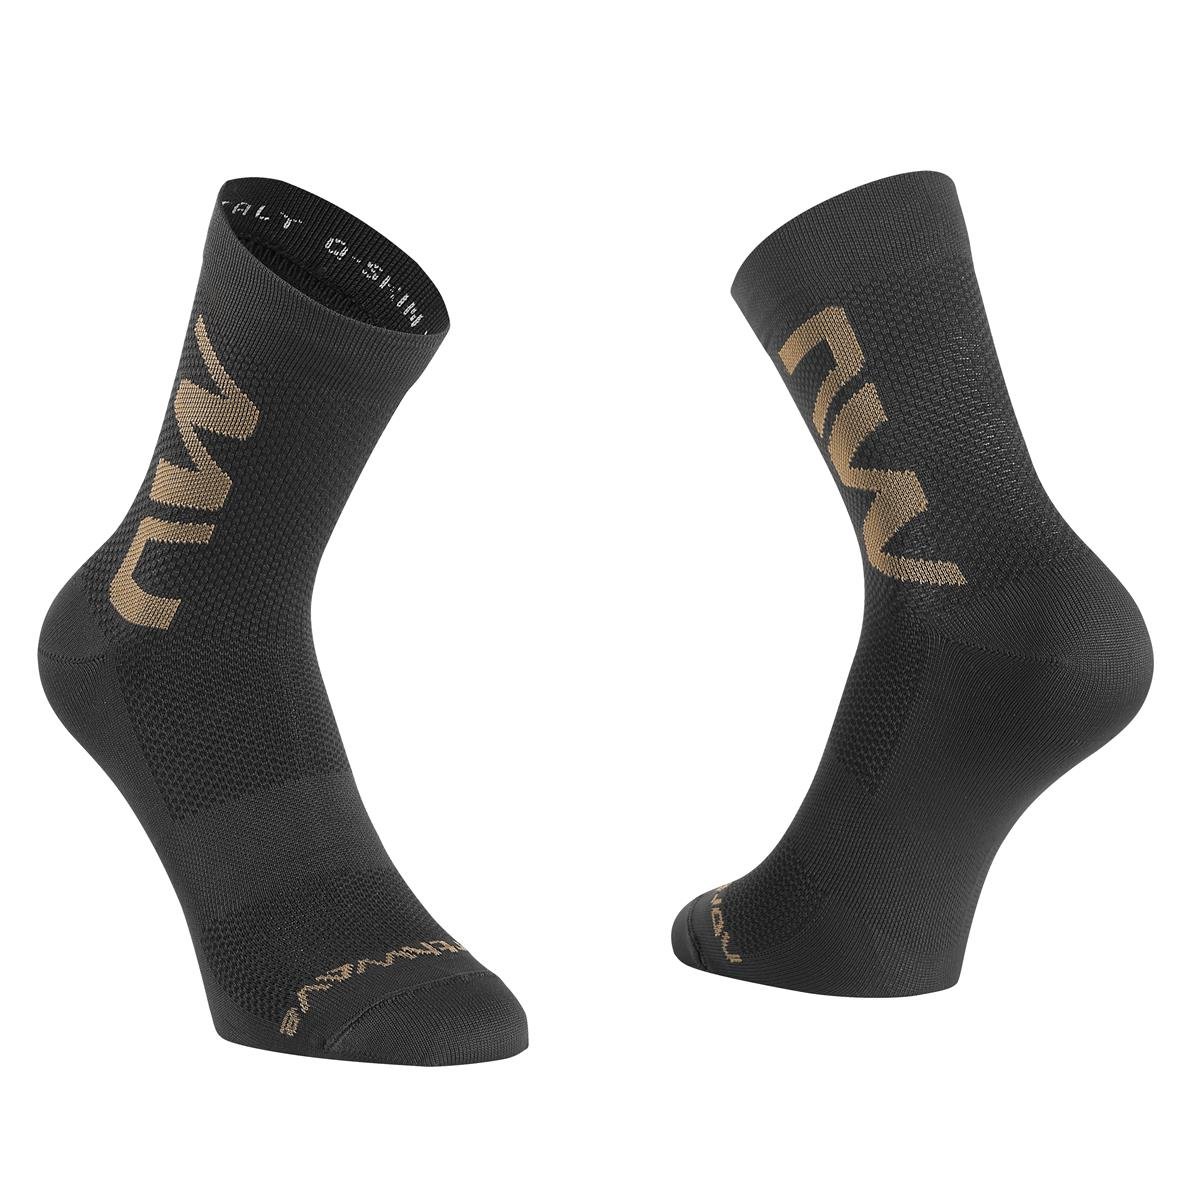 Northwave Socks Extreme Air Mid Black/Sand